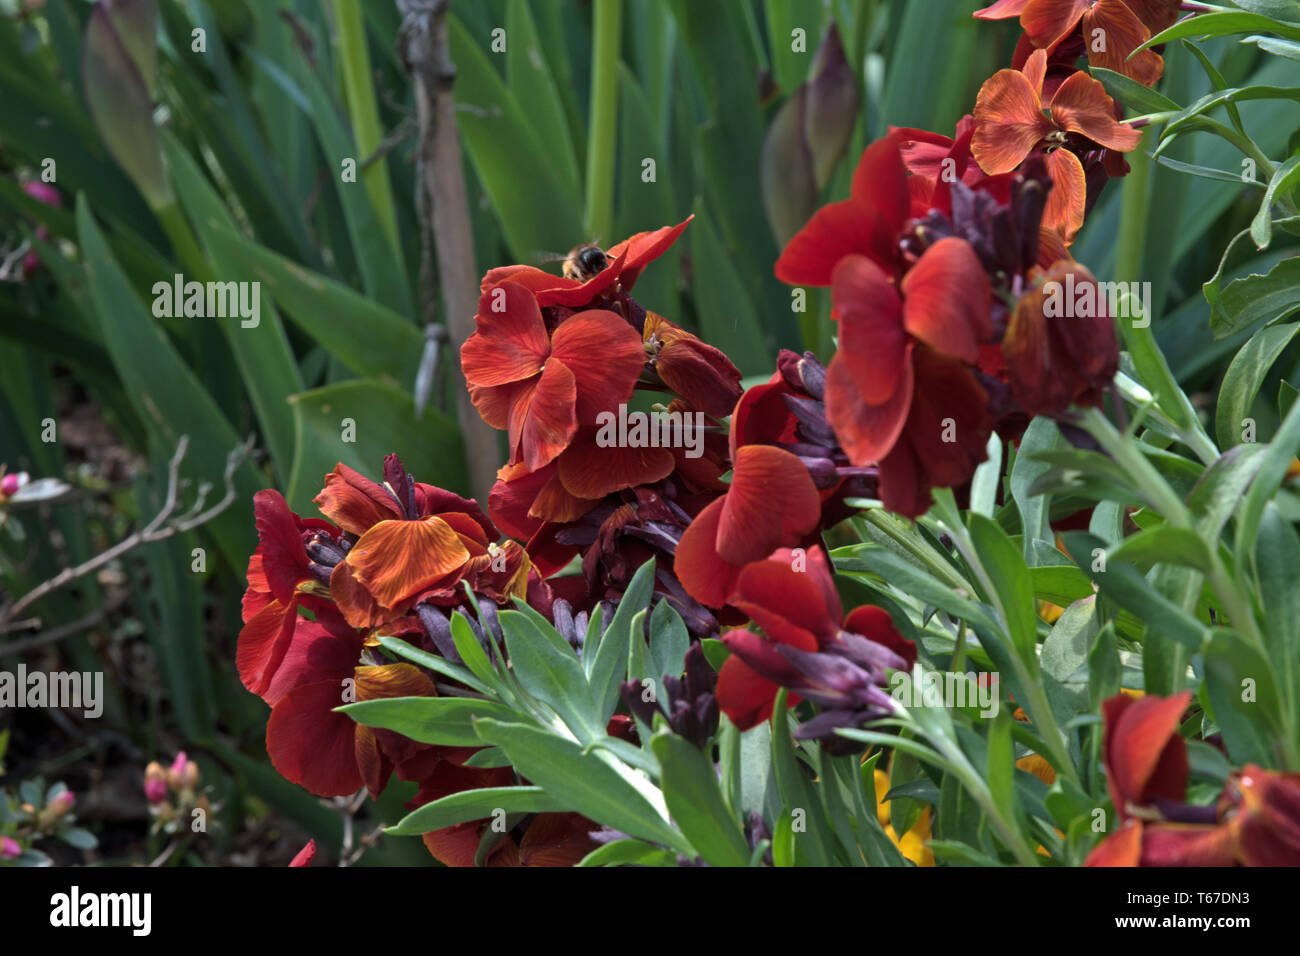 Mahogany-red fragrant wallflower Stock Photo